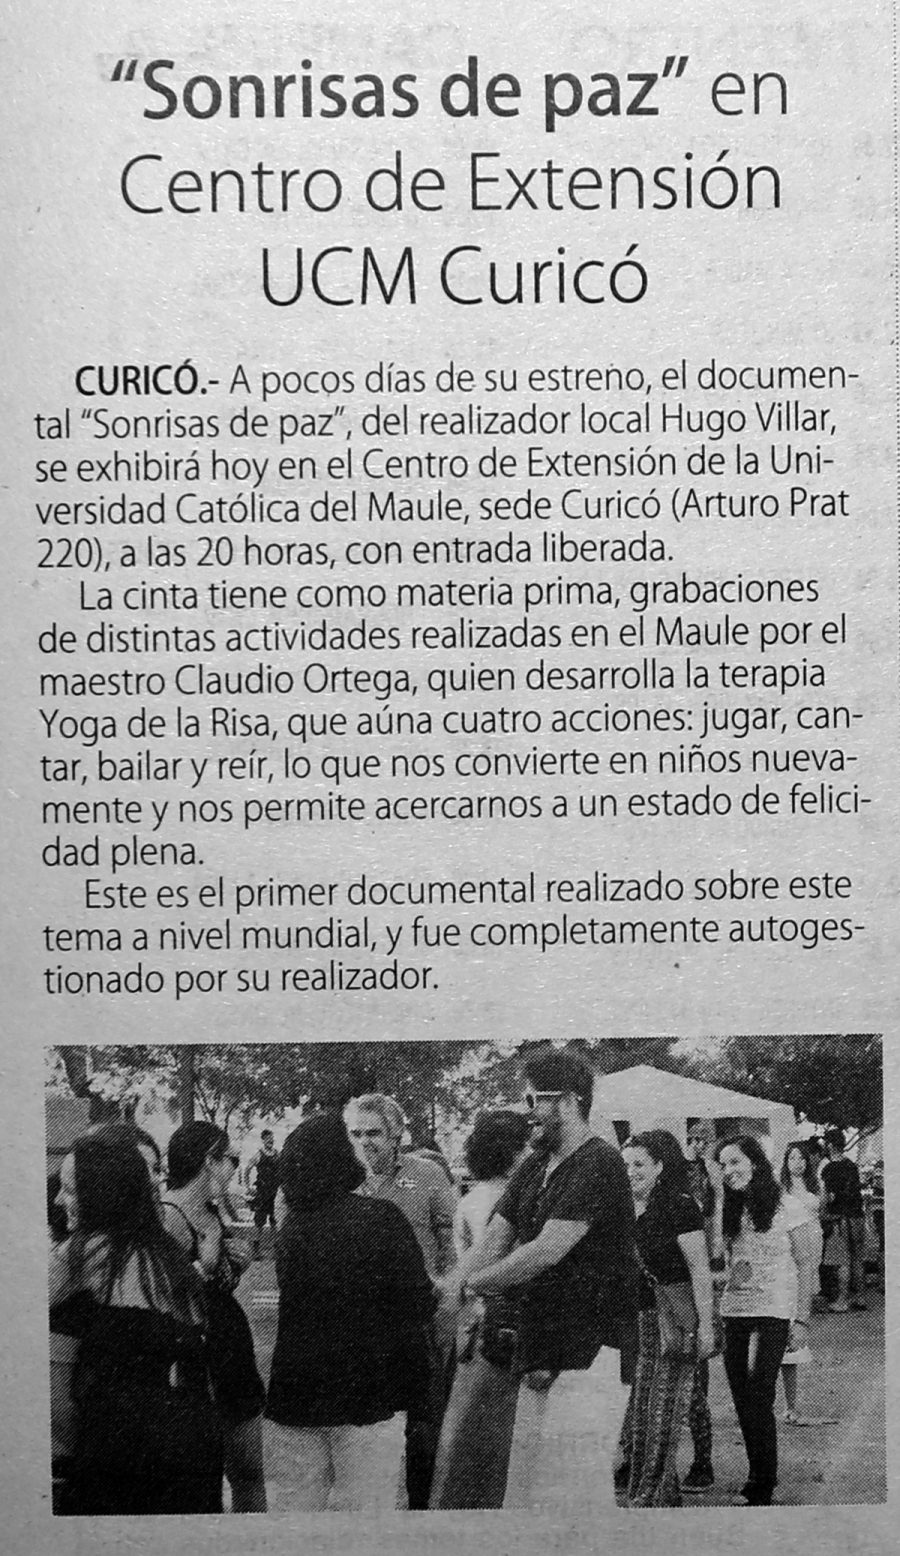 26 de abril en Diario El Centro: “Sonrisas de paz” en Centro de Extensión UCM Curicó”